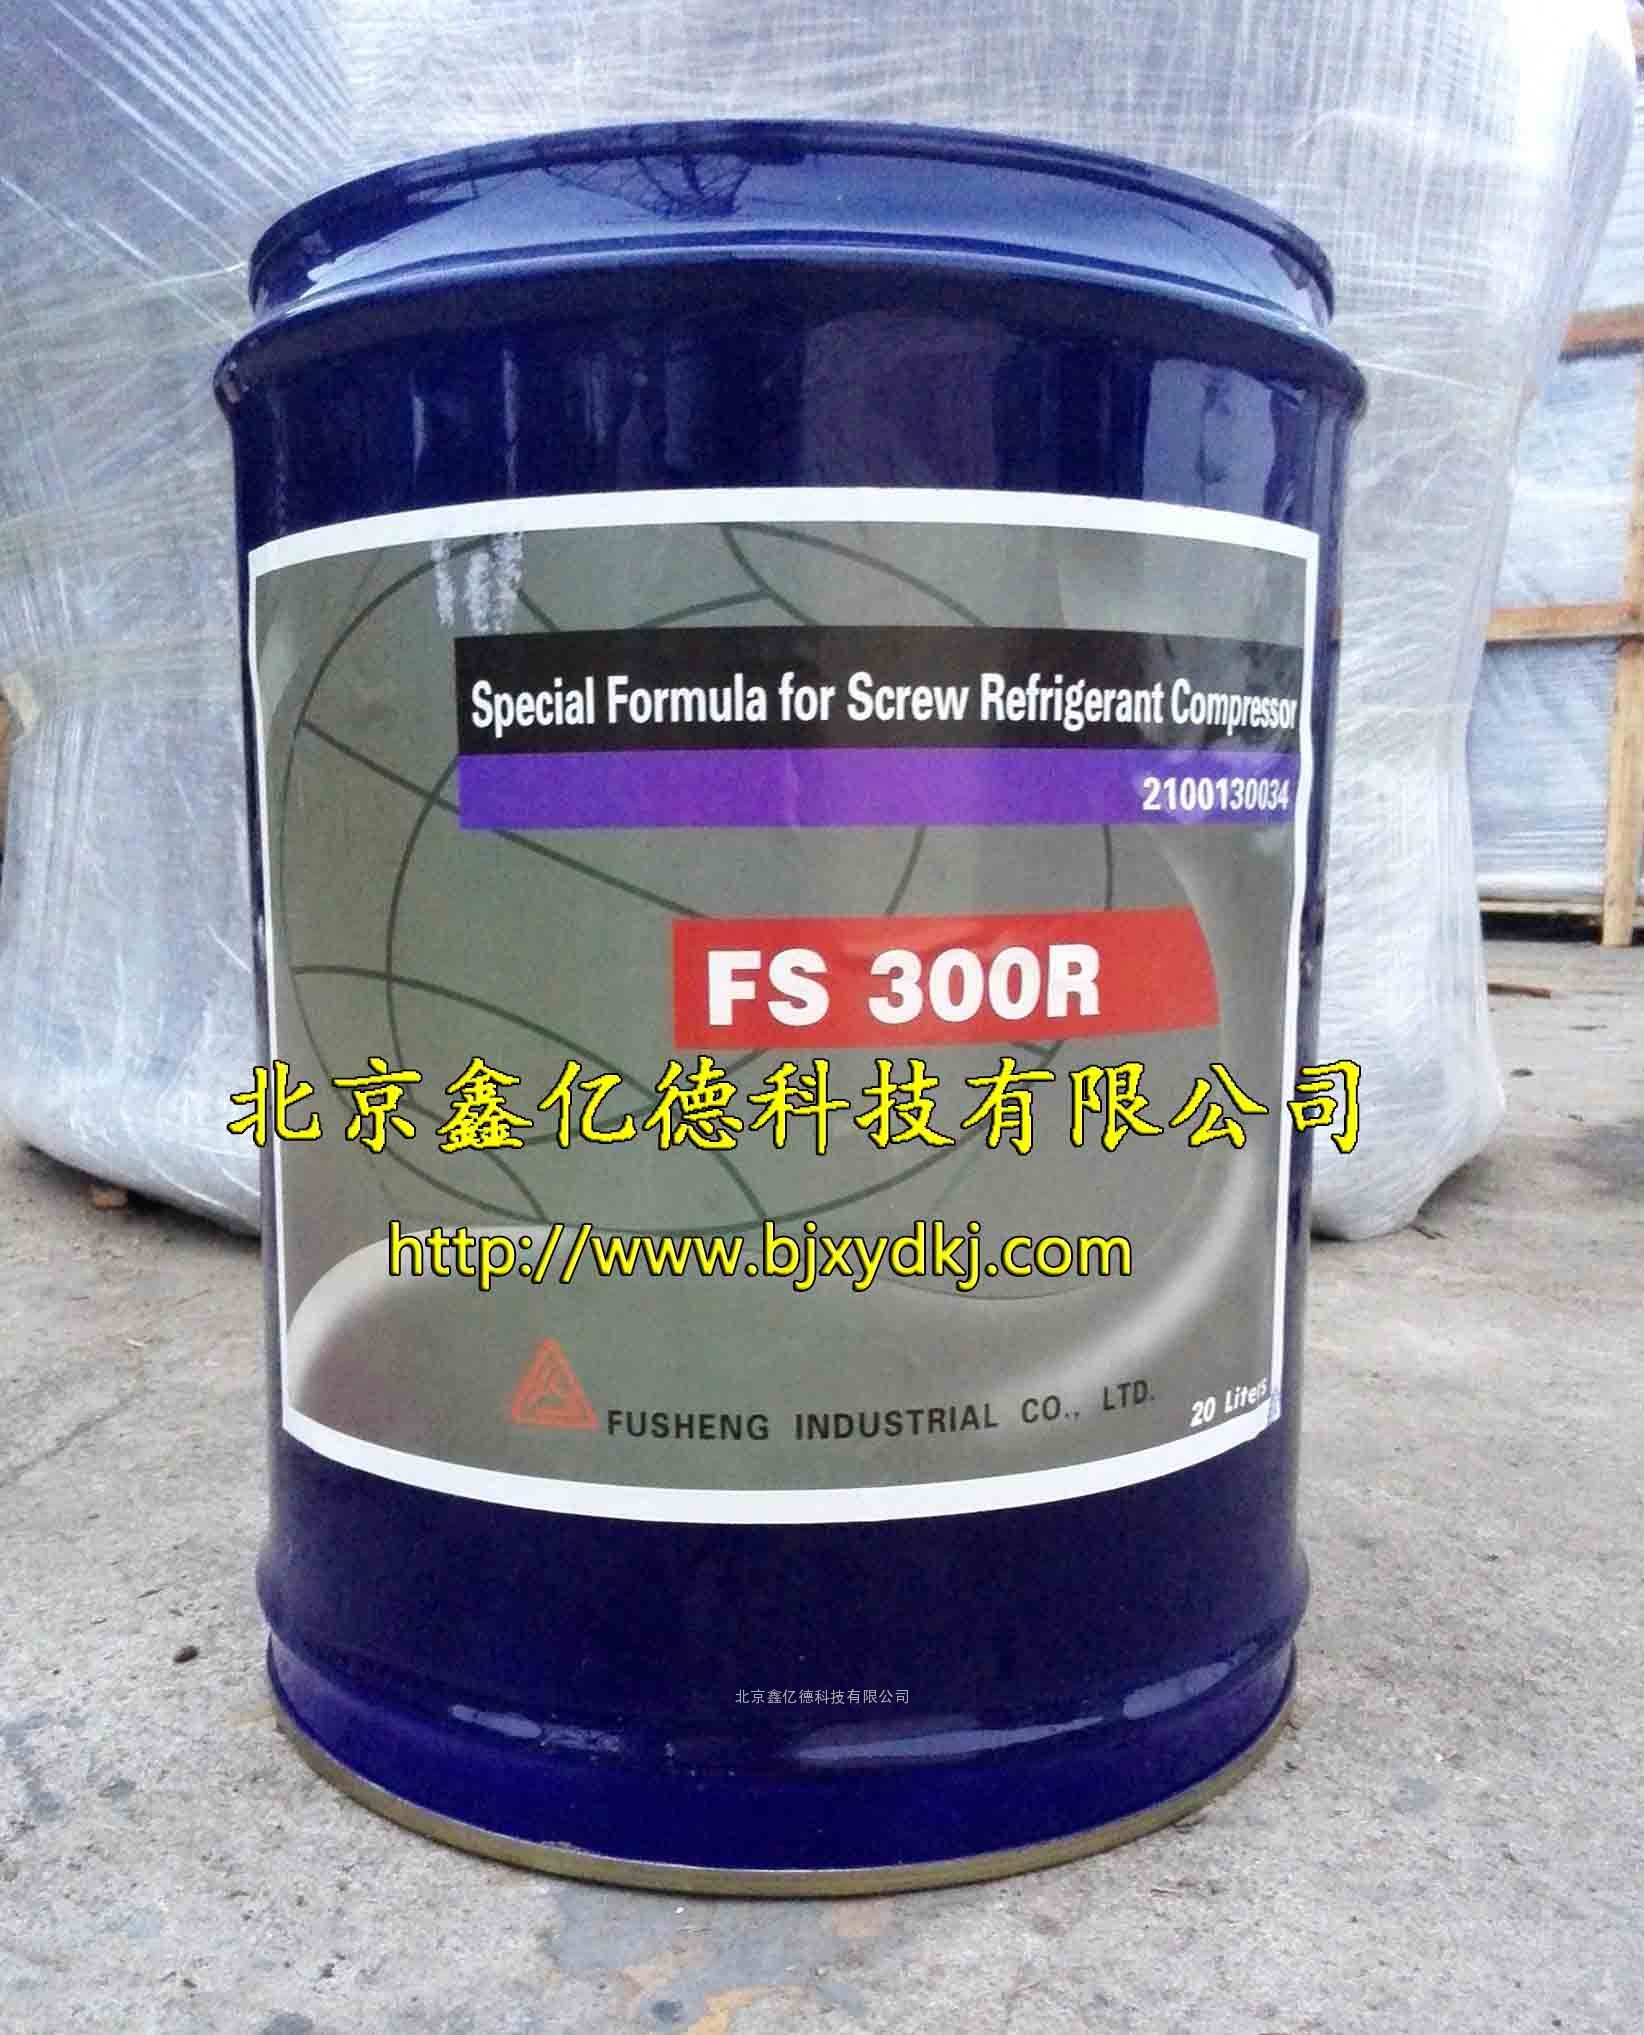 复盛机组冷冻油FS 300R